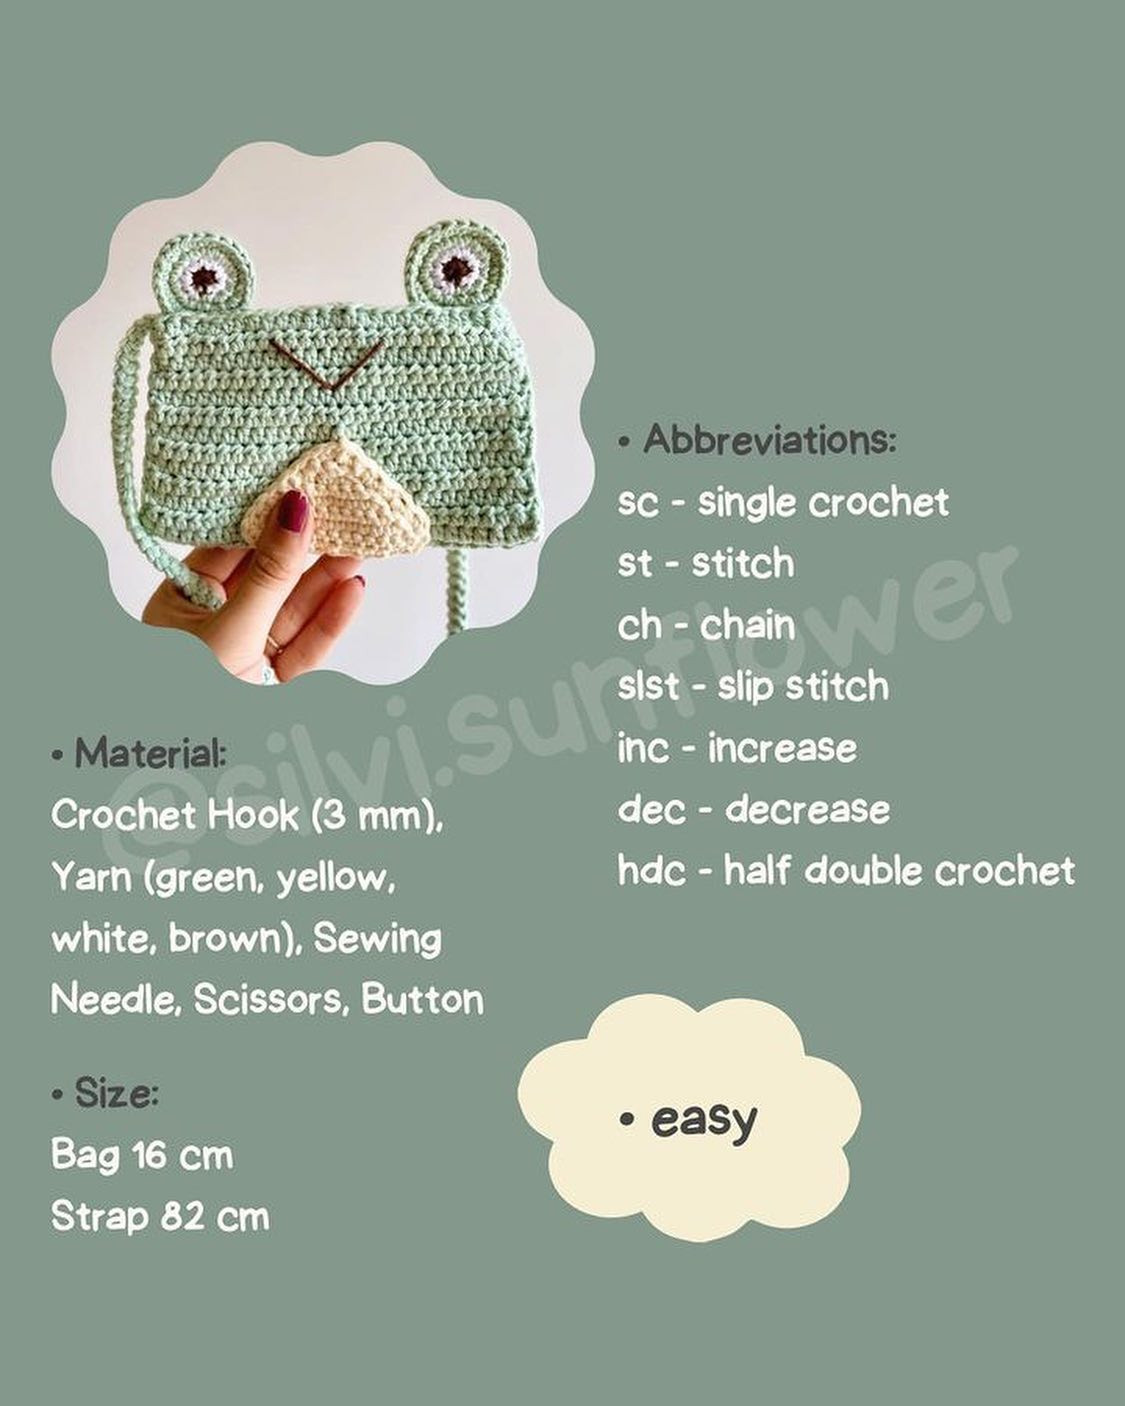 free pattern frog bag